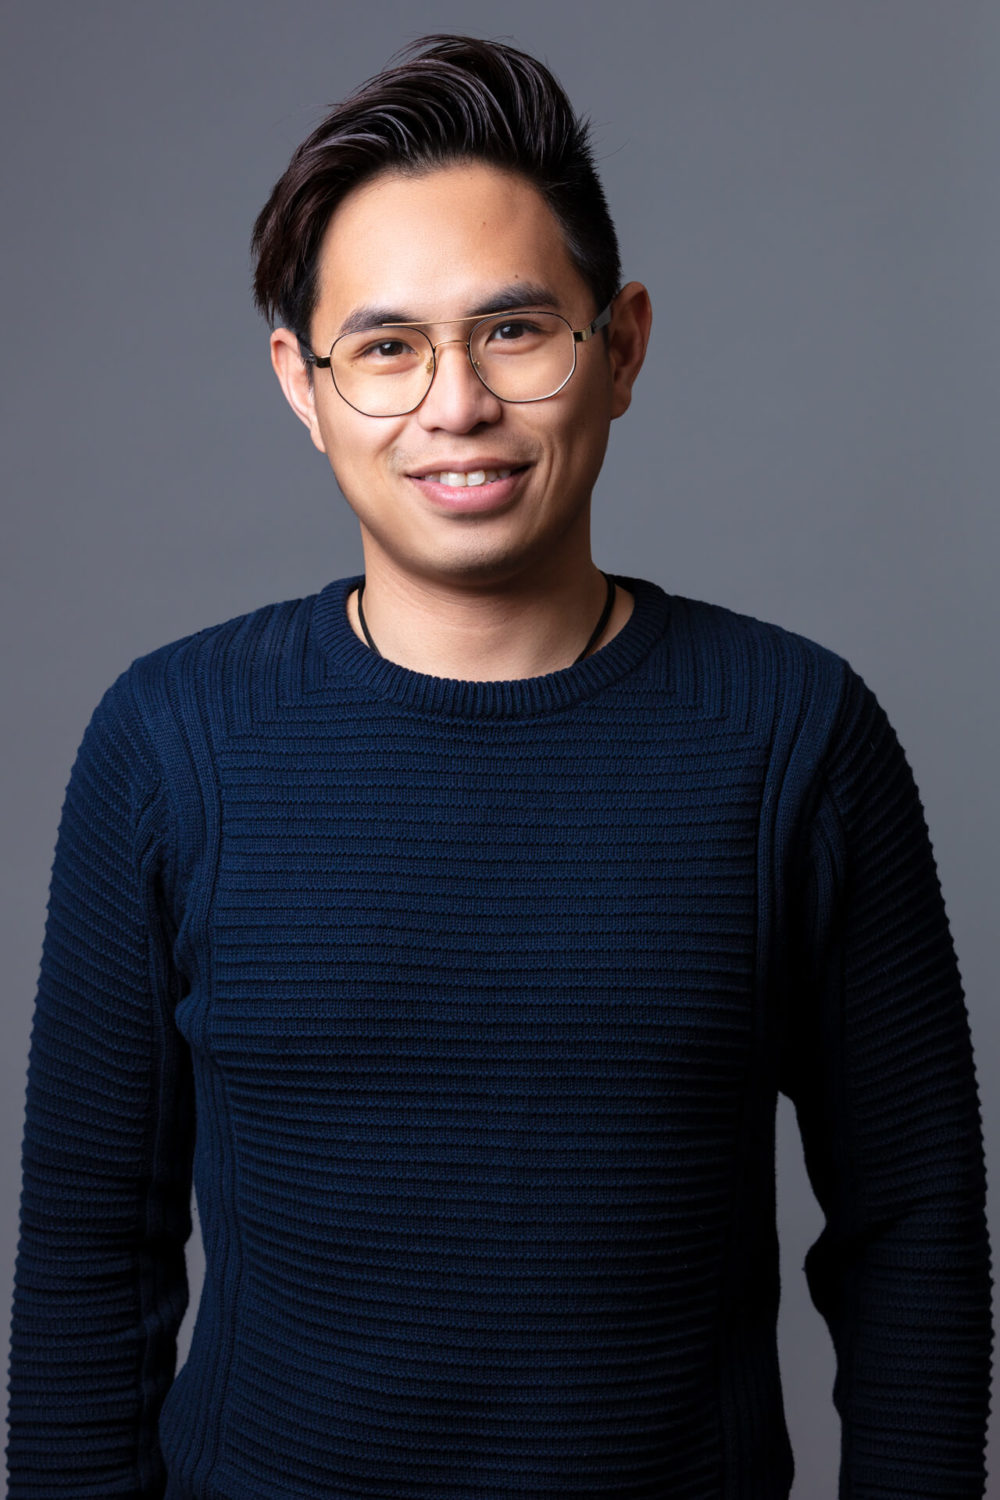 Un jeune homme asiatique heureux avec des lunettes et un pull bleu foncé se tient devant un fond gris.